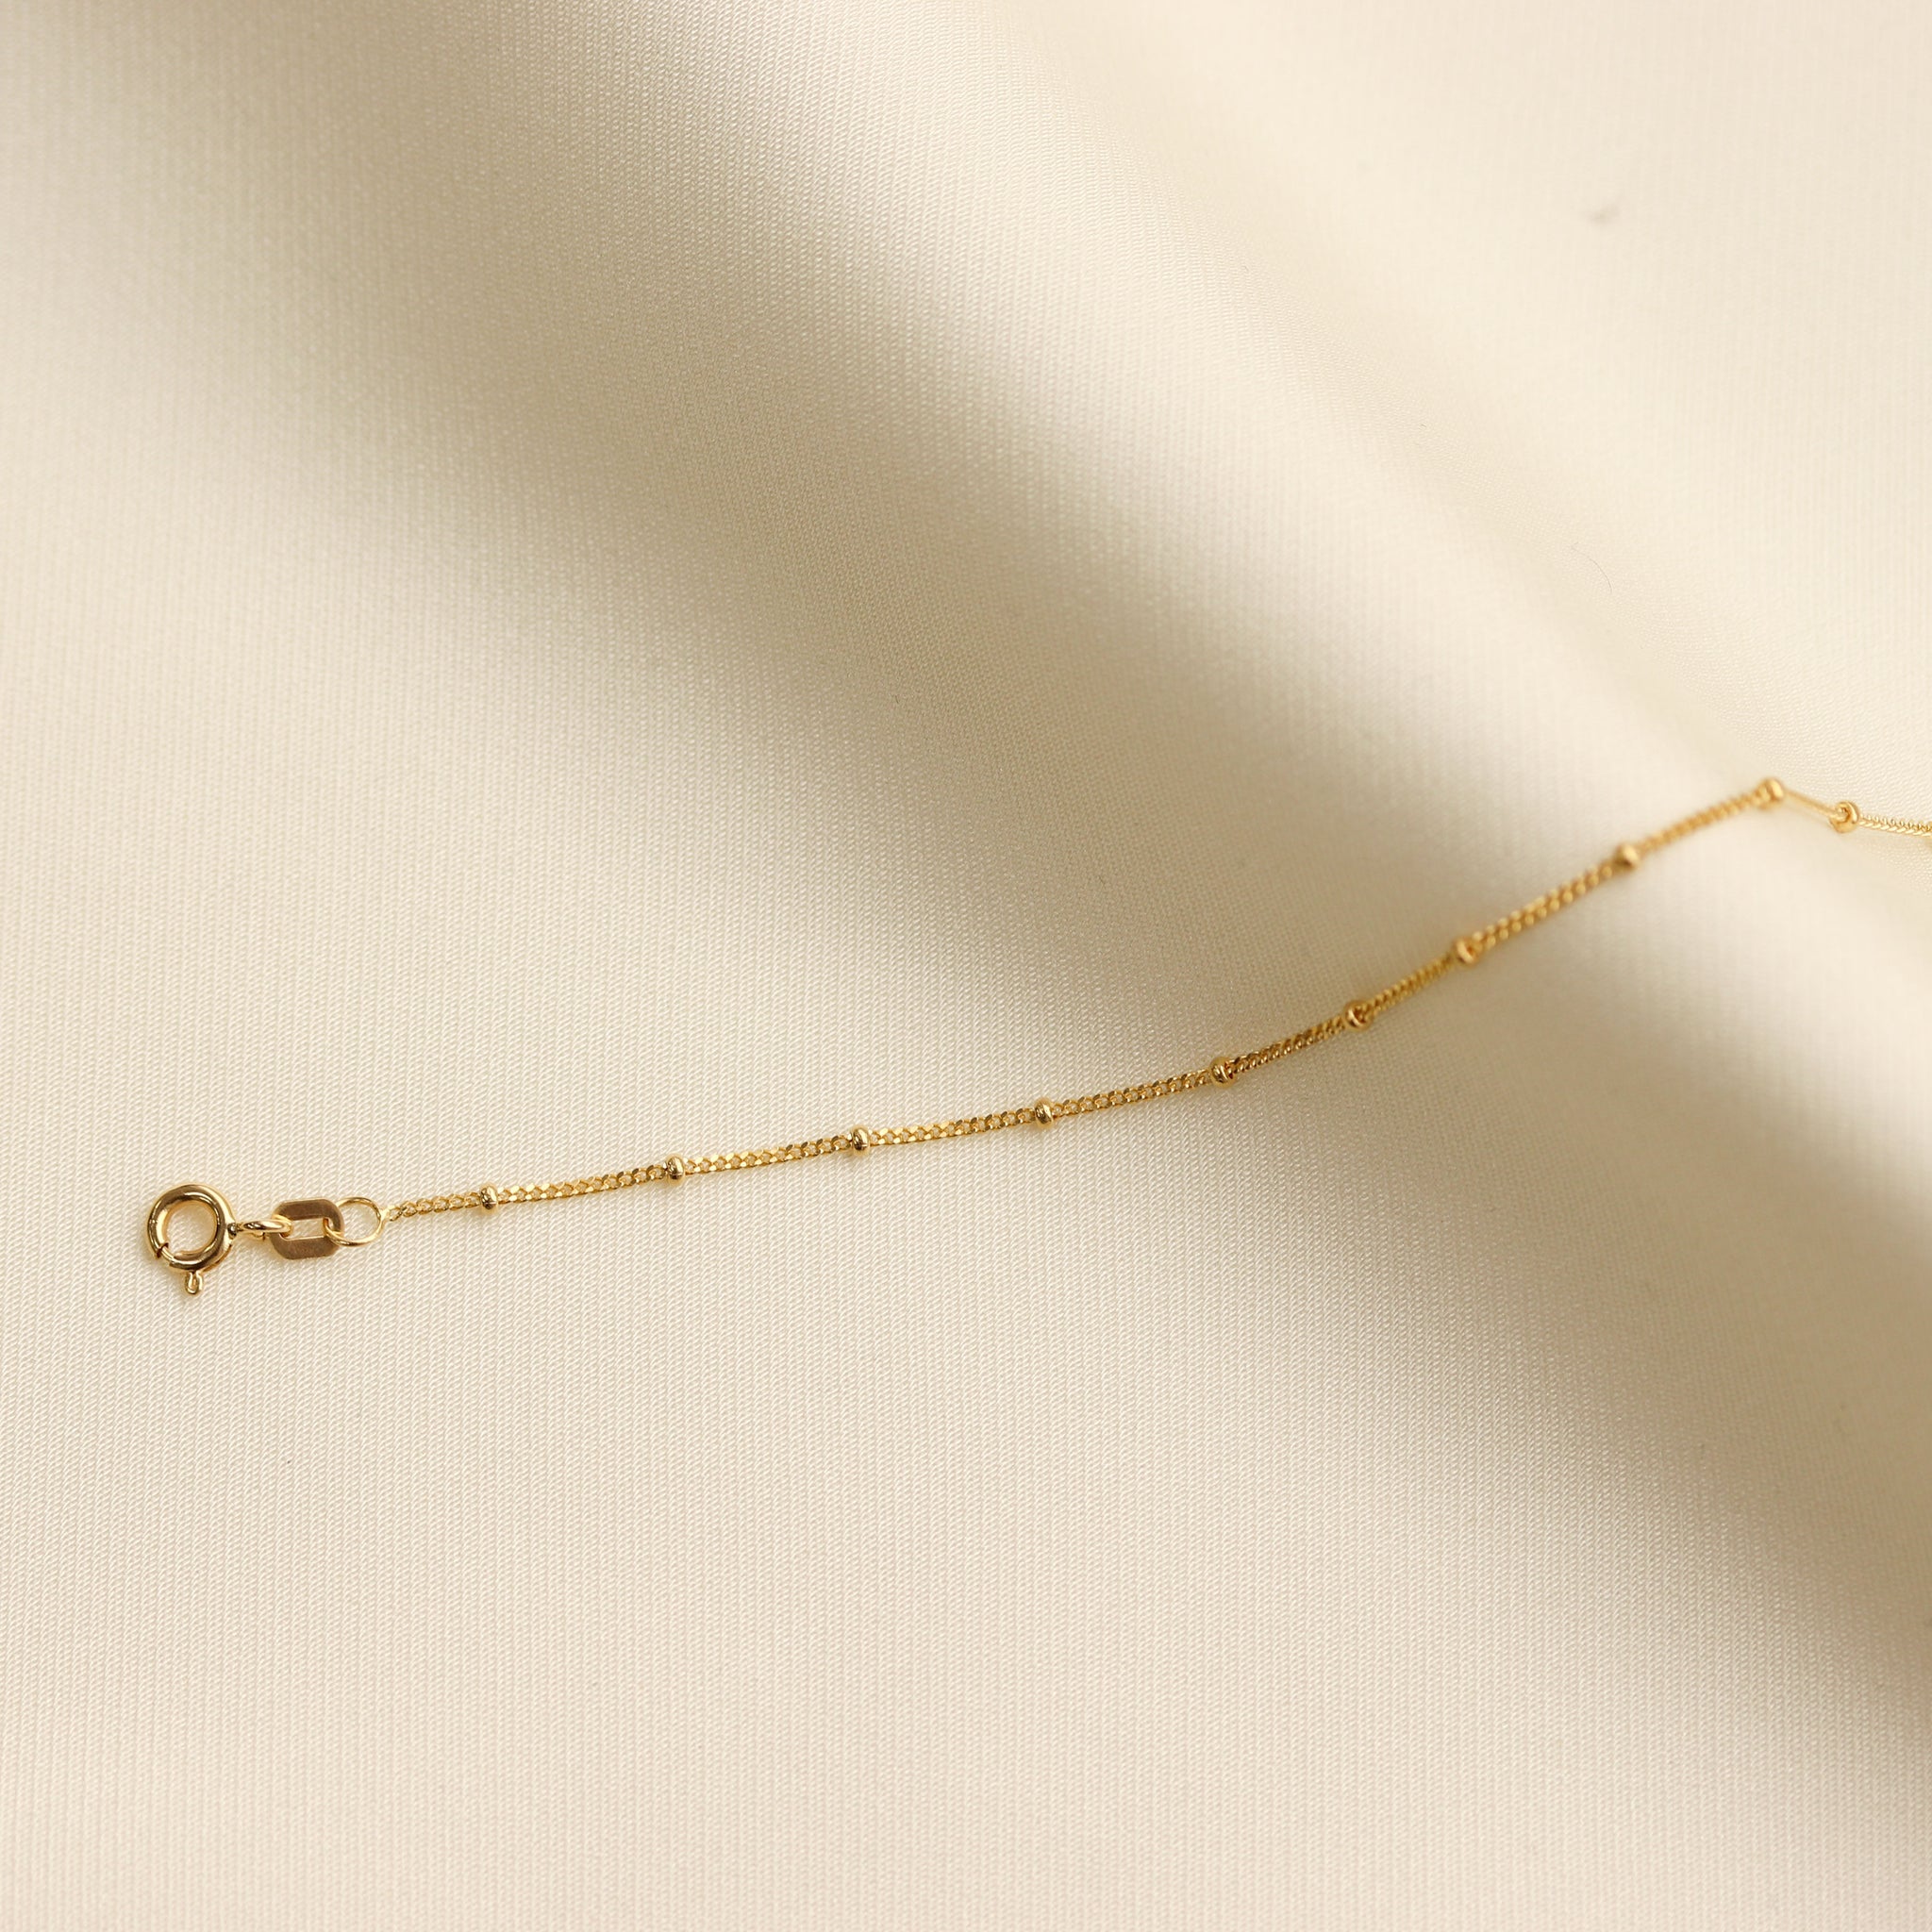 Satellite Chain – Design Gold Jewelry